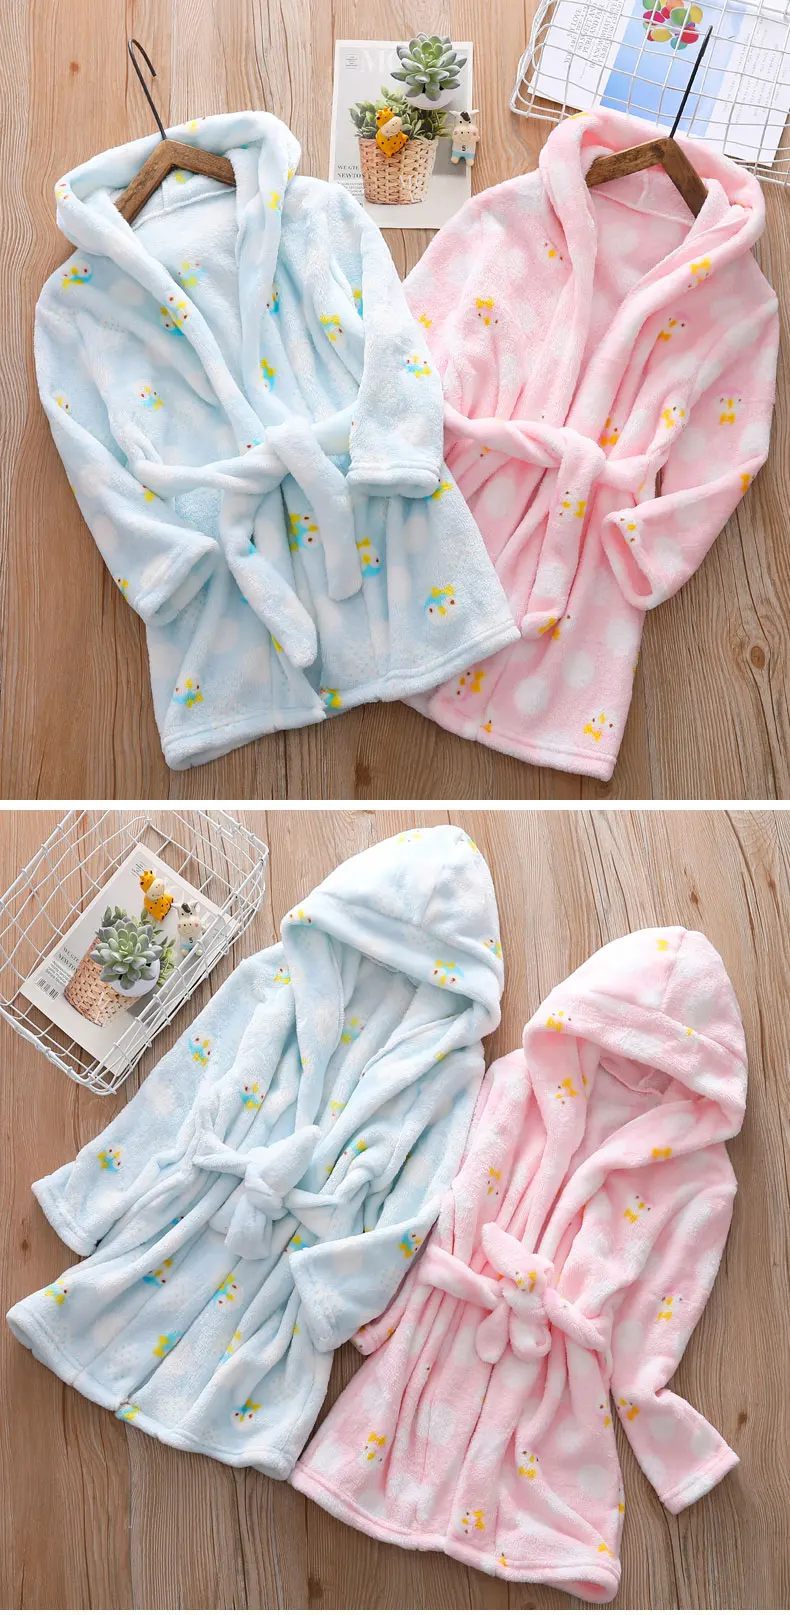 Sifafos/детская одежда для мальчиков и девочек; зимний банный халат; фланелевые пижамы; Детская домашняя одежда; одежда для сна с капюшоном; коралловый бархат